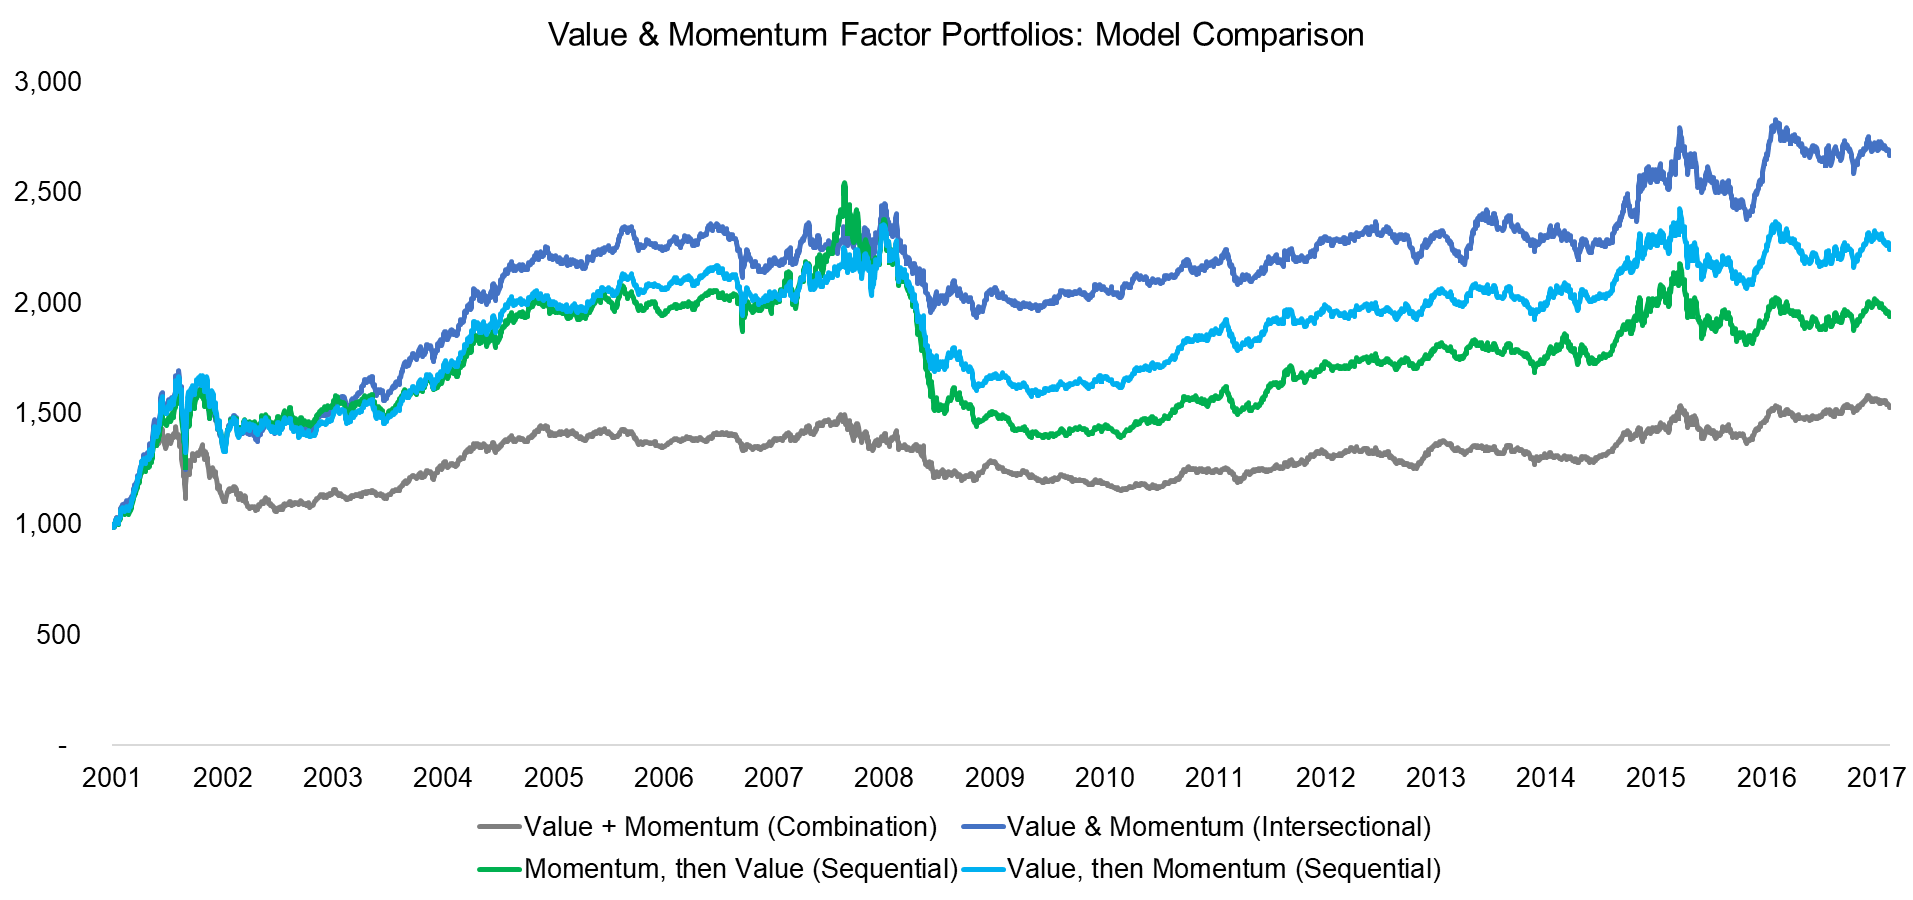 Value & Momentum Factor Portfolios Model Comparison